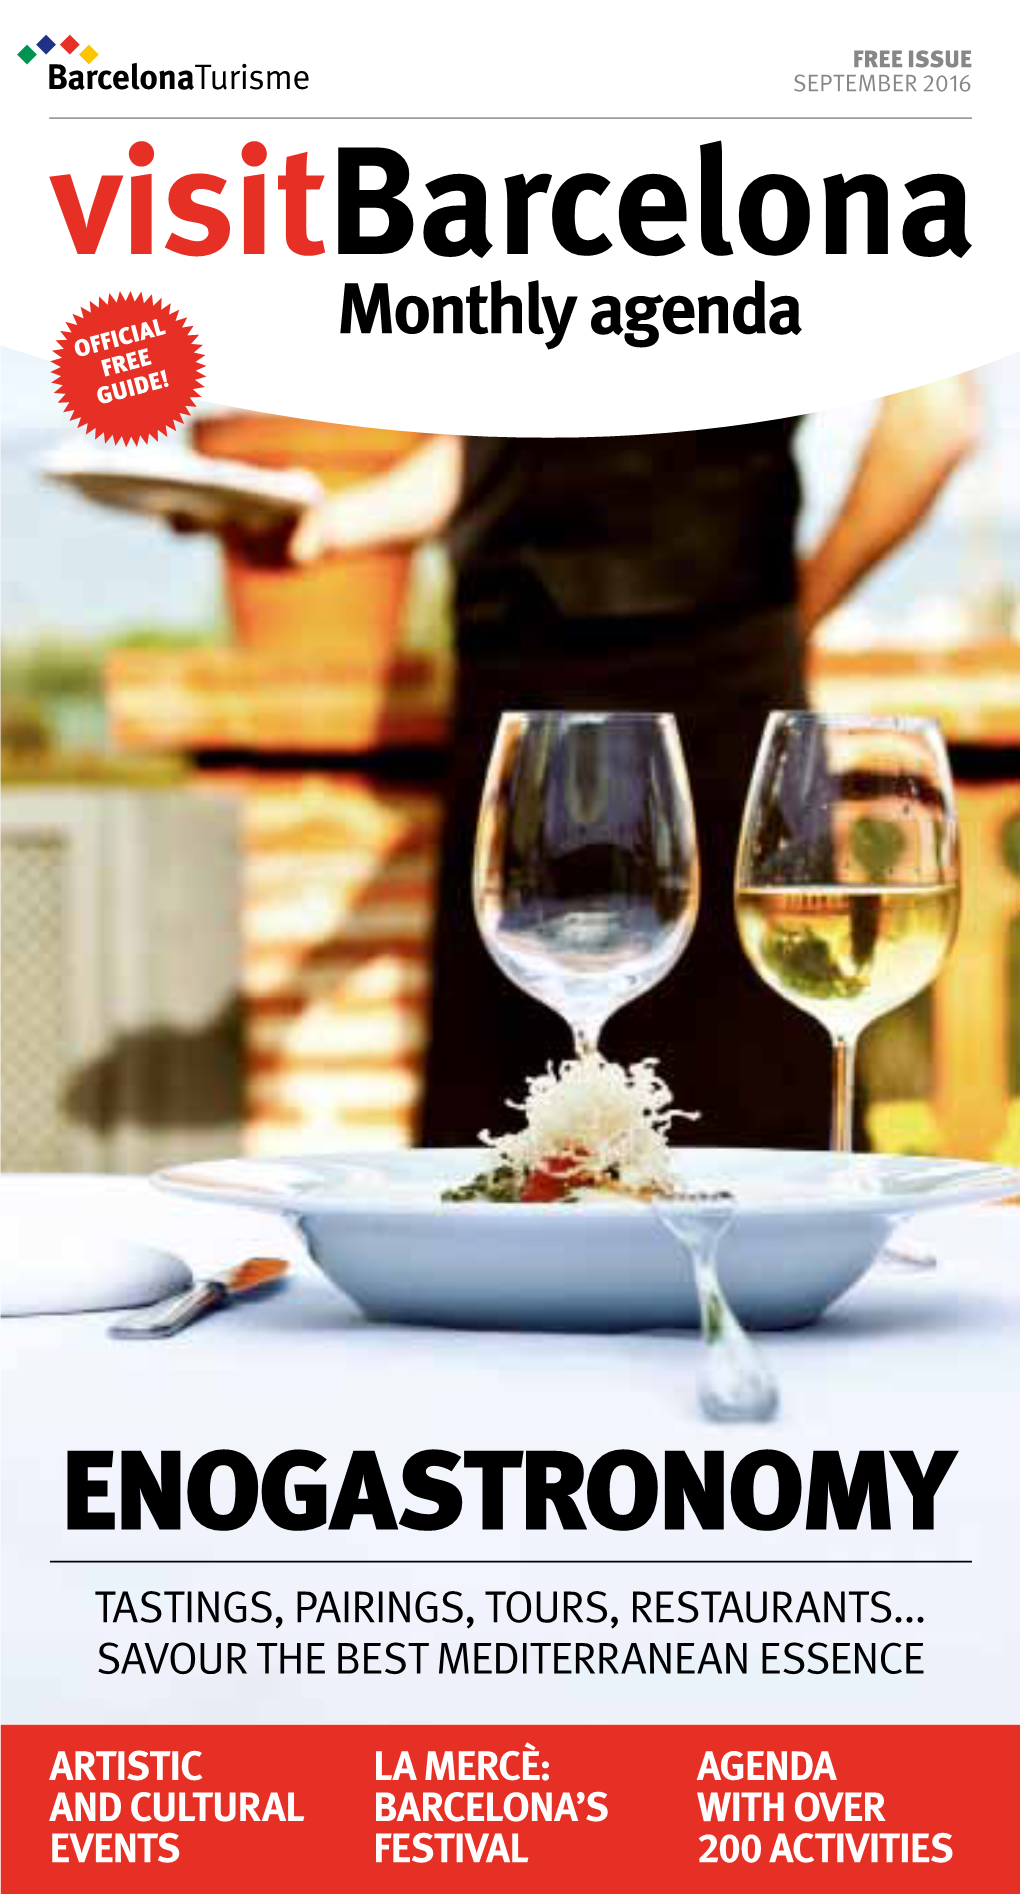 Enogastronomy Tastings, Pairings, Tours, Restaurants